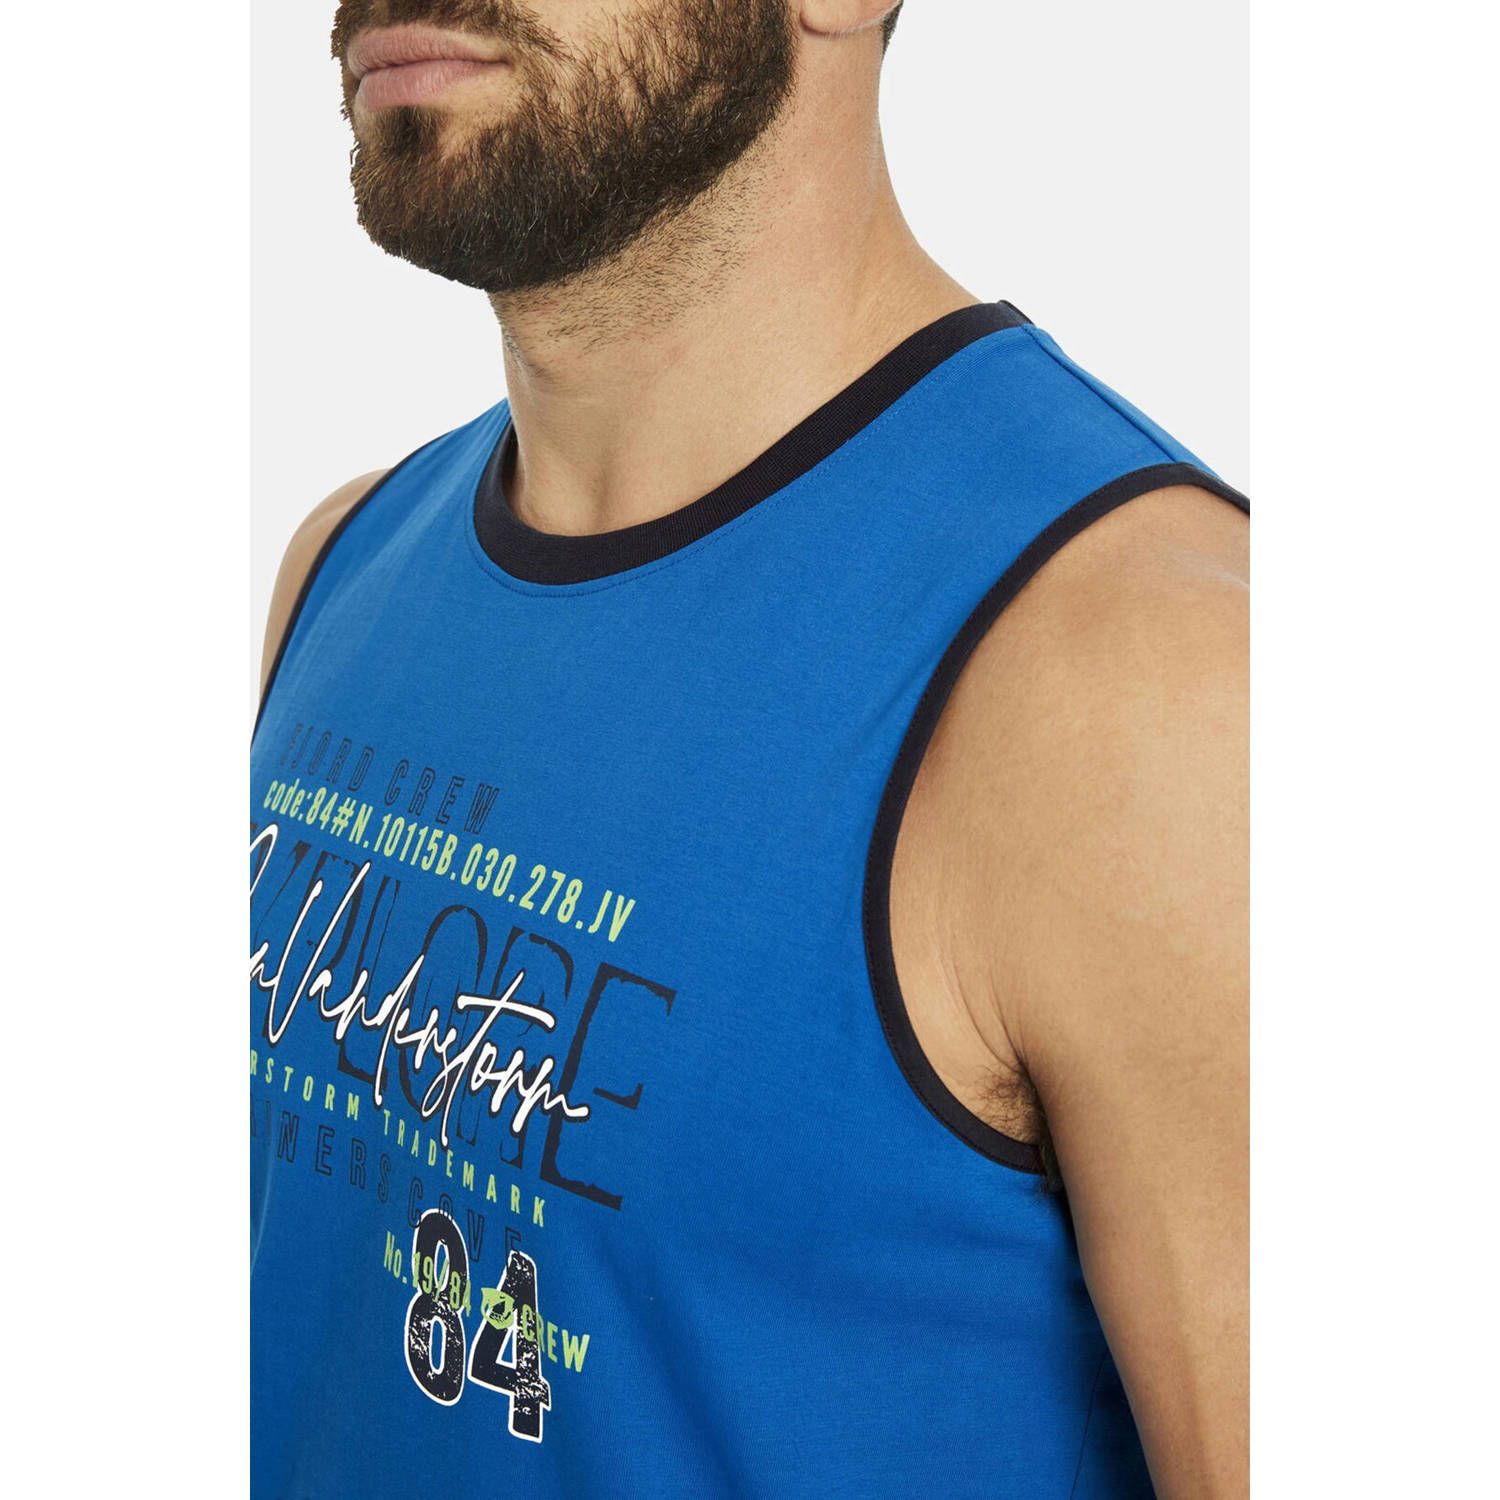 Jan Vanderstorm +FIT Collectie oversized T-shirt FRODEWIN Plus Size met printopdruk blauw